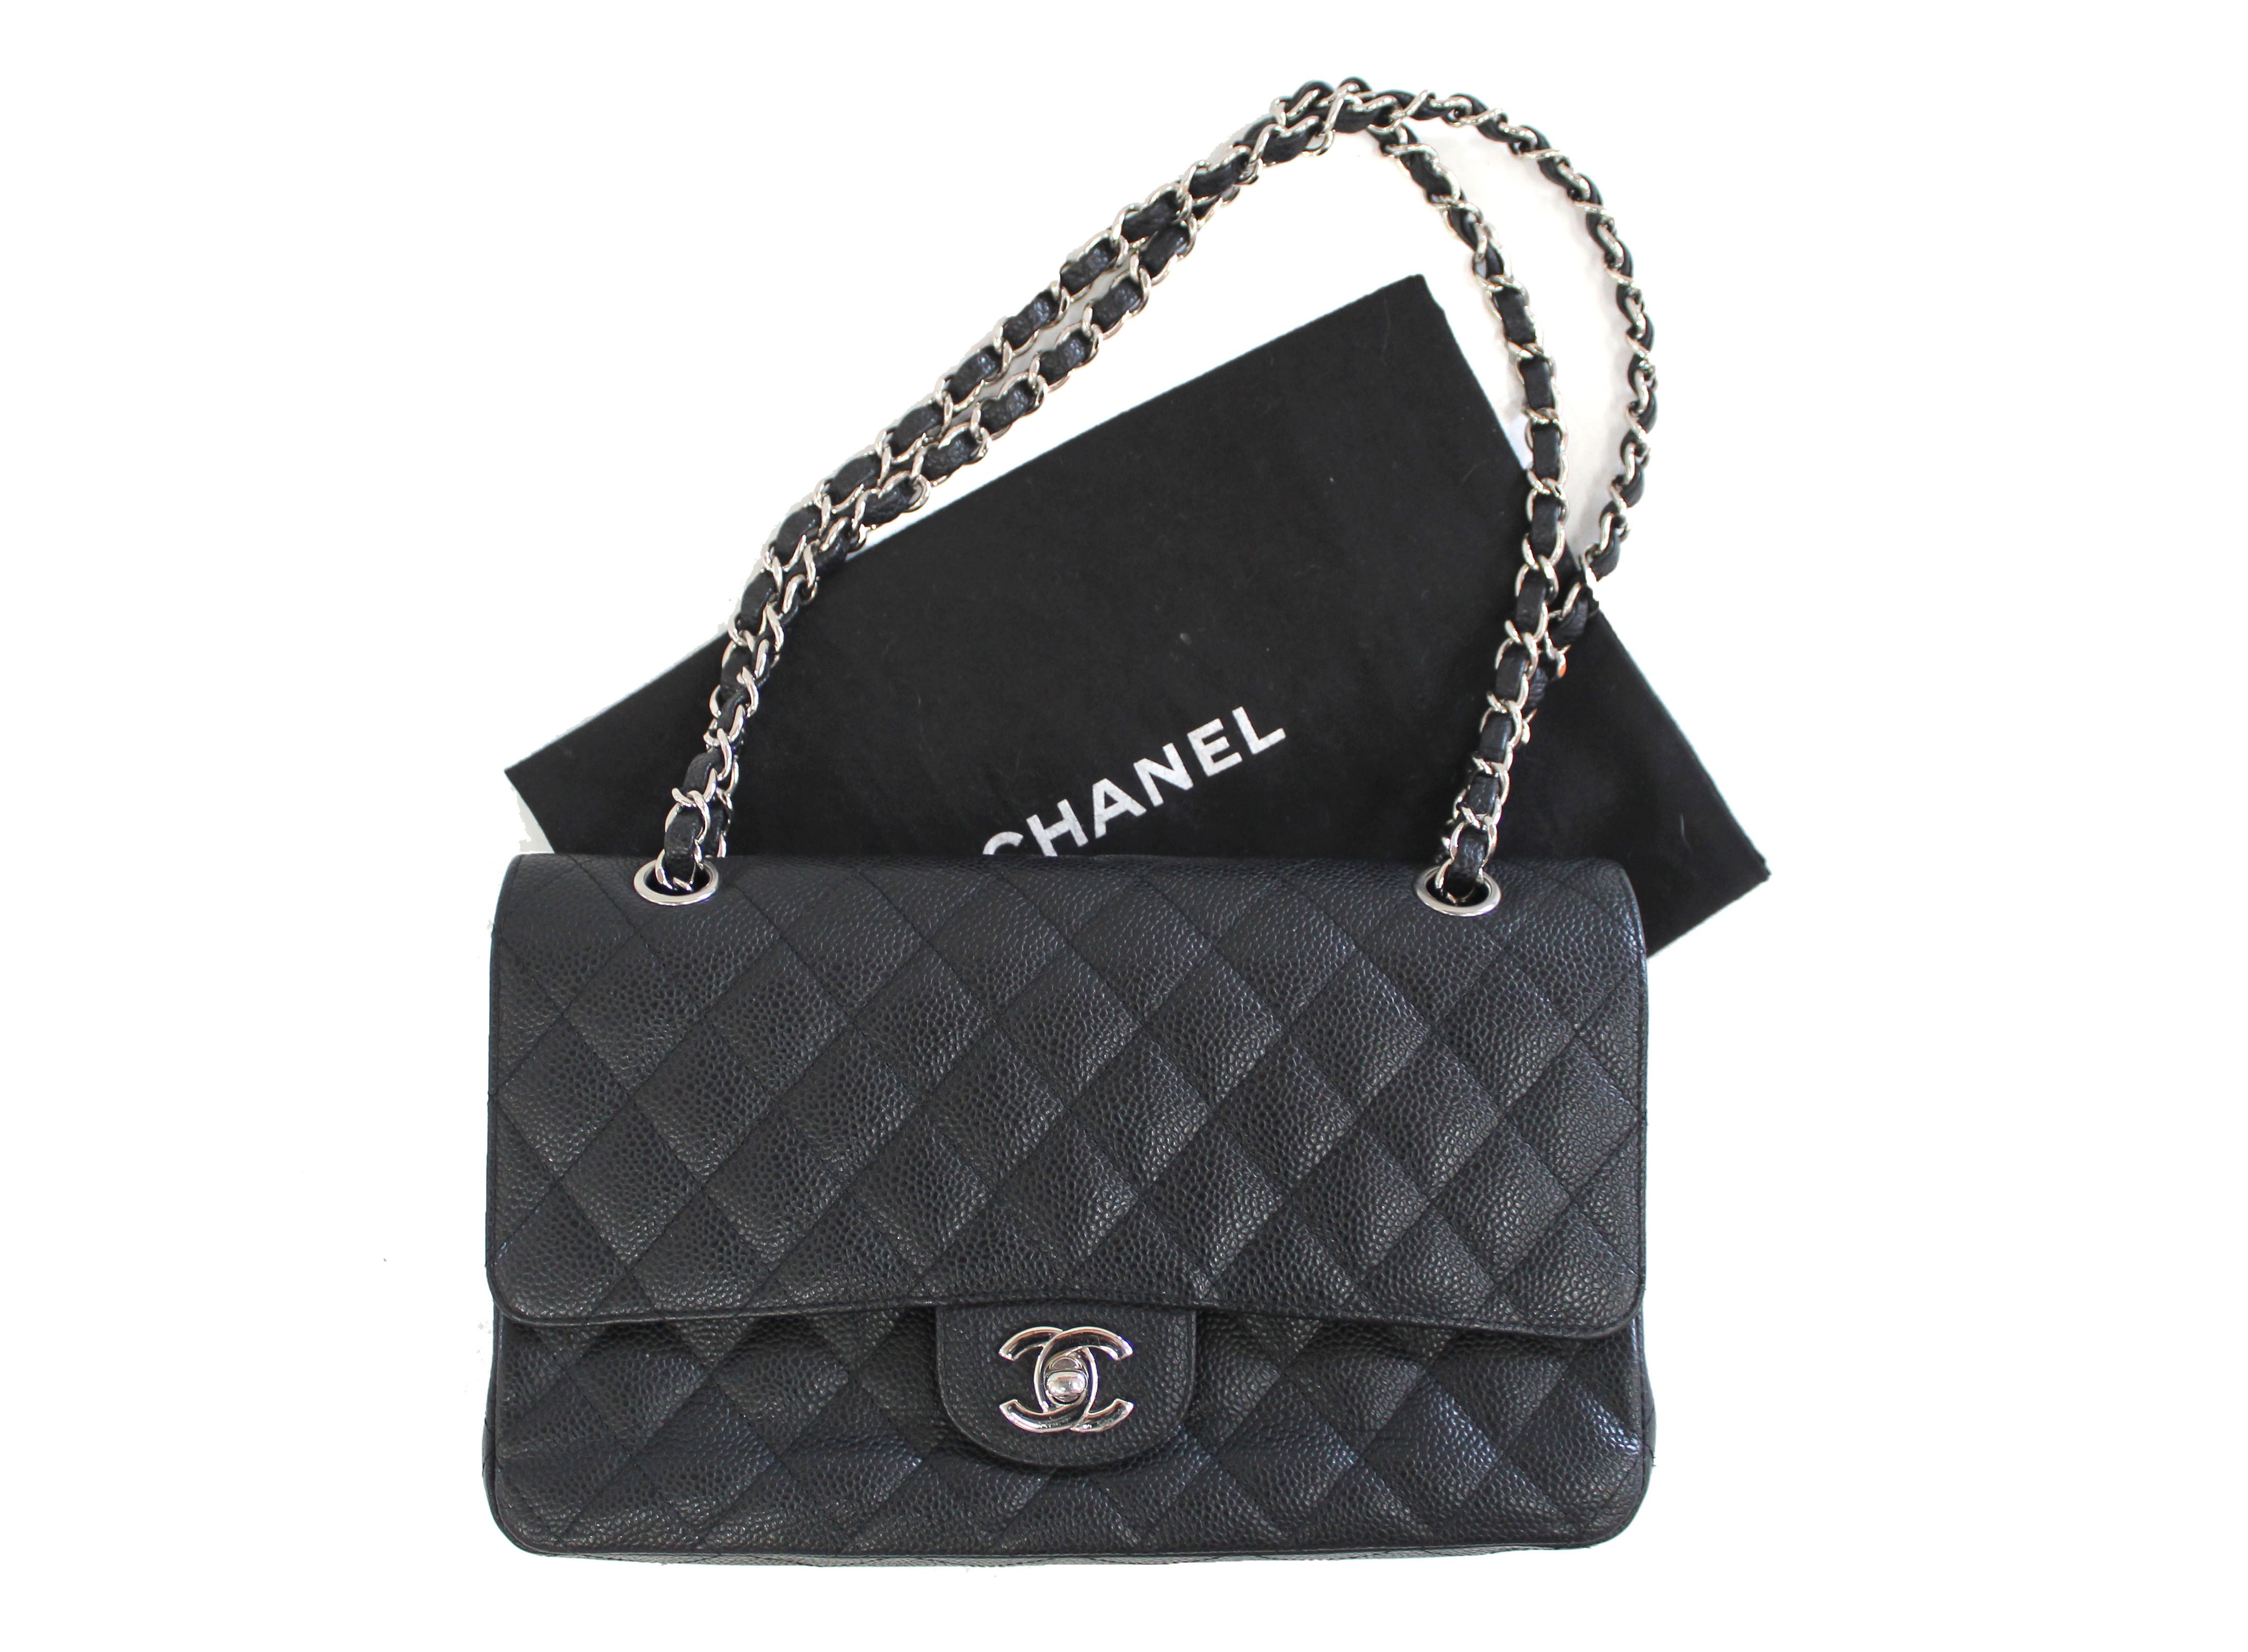 Authentic Chanel Classic Black Caviar Leather Medium Double Flap bag –  Paris Station Shop